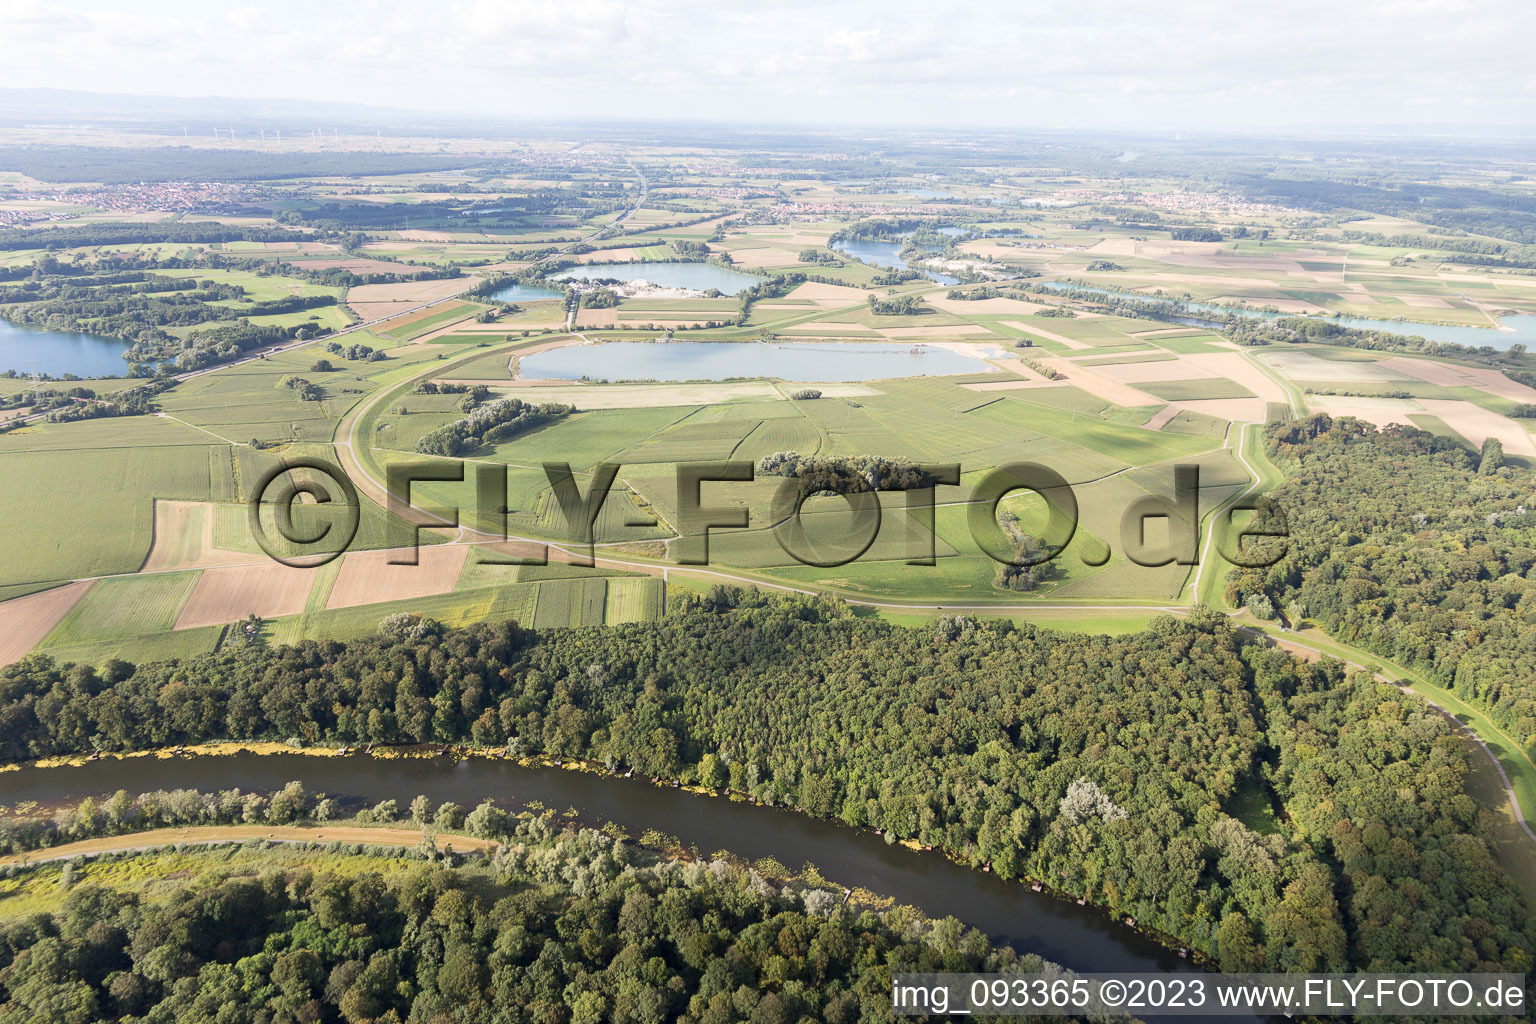 Vue aérienne de Prairies rhénanes, polders à Jockgrim dans le département Rhénanie-Palatinat, Allemagne